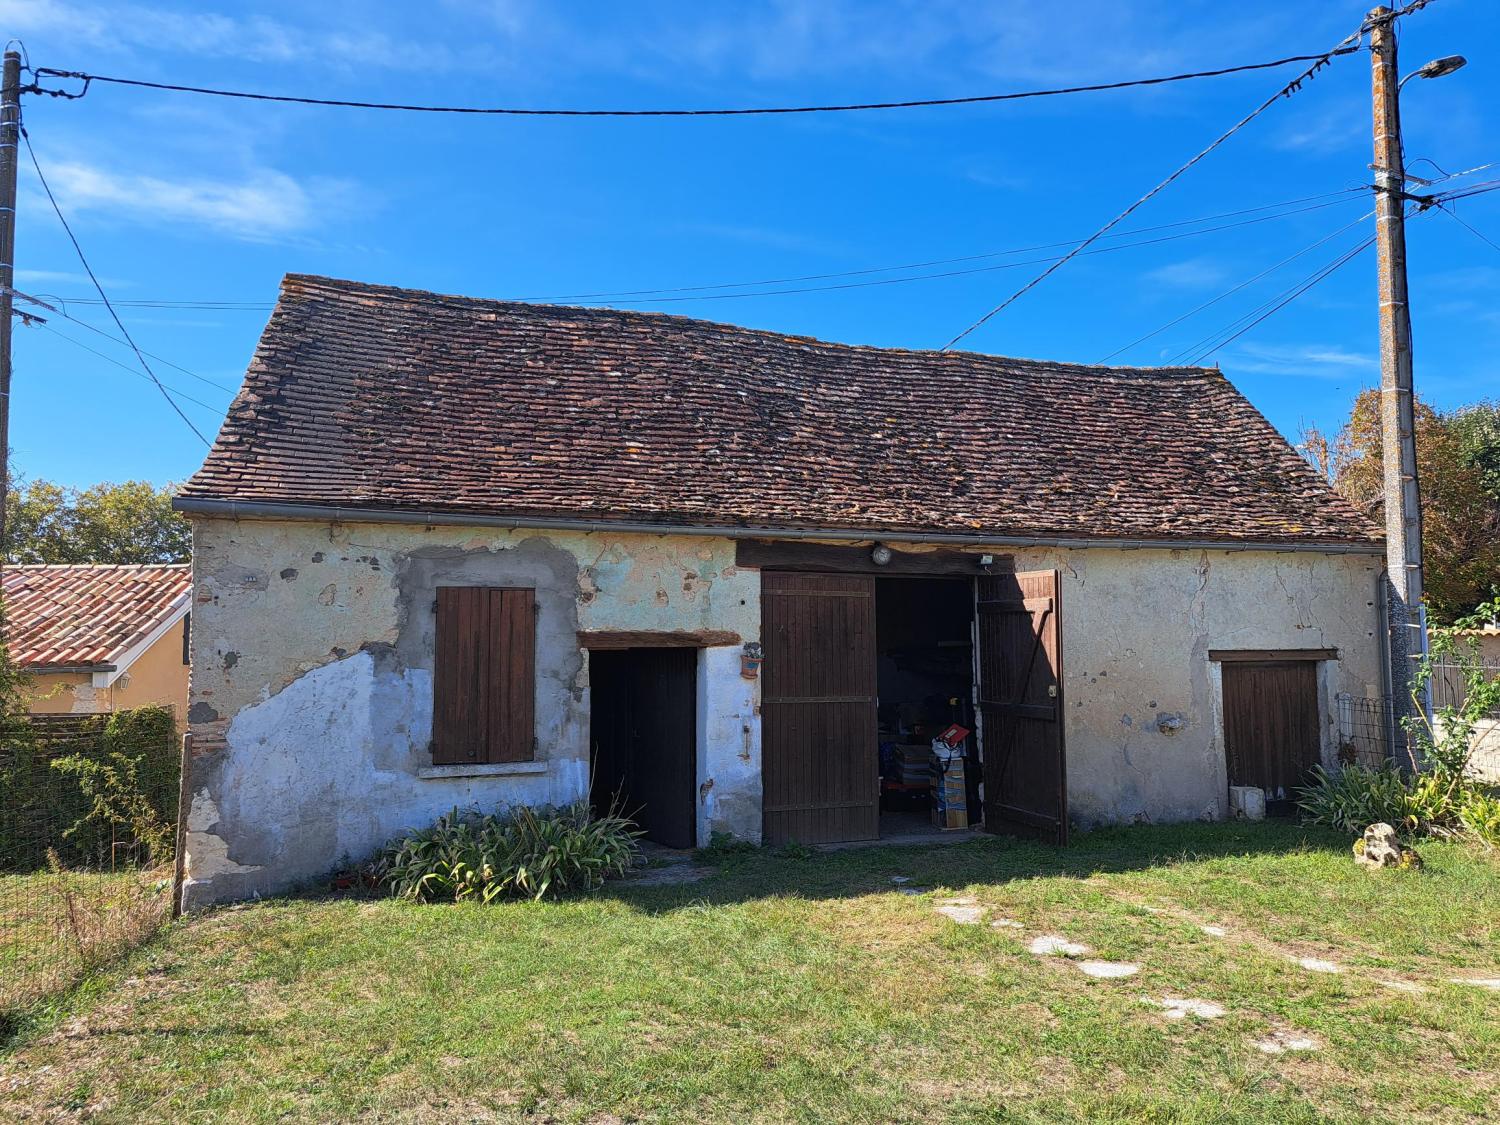  à vendre grange Cours-de-Pile Dordogne 4